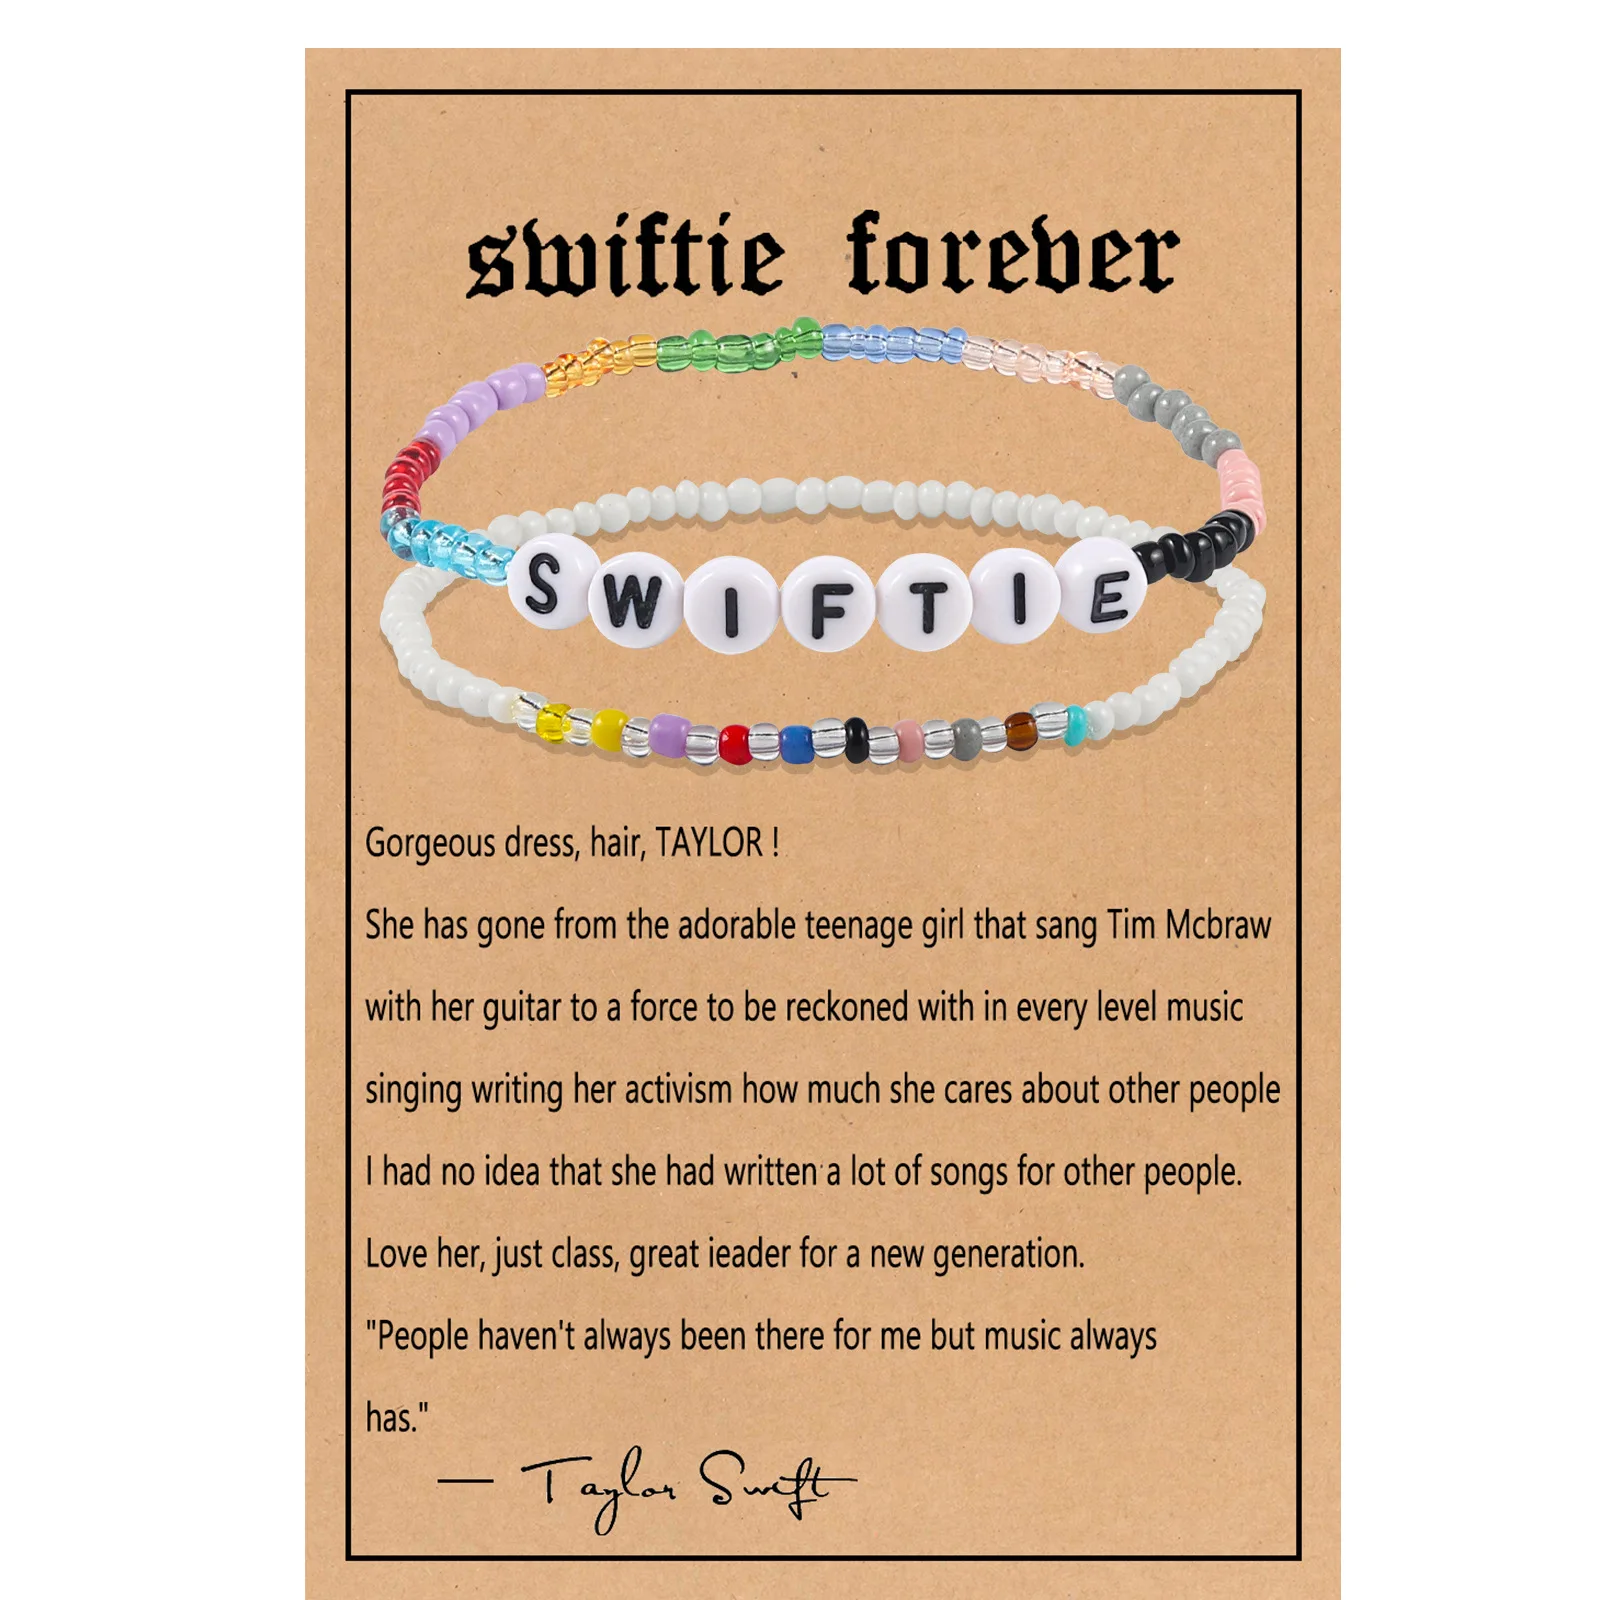 DAVINI Taylor Bracelets Swiftie Jewelry ForThe Eras Music